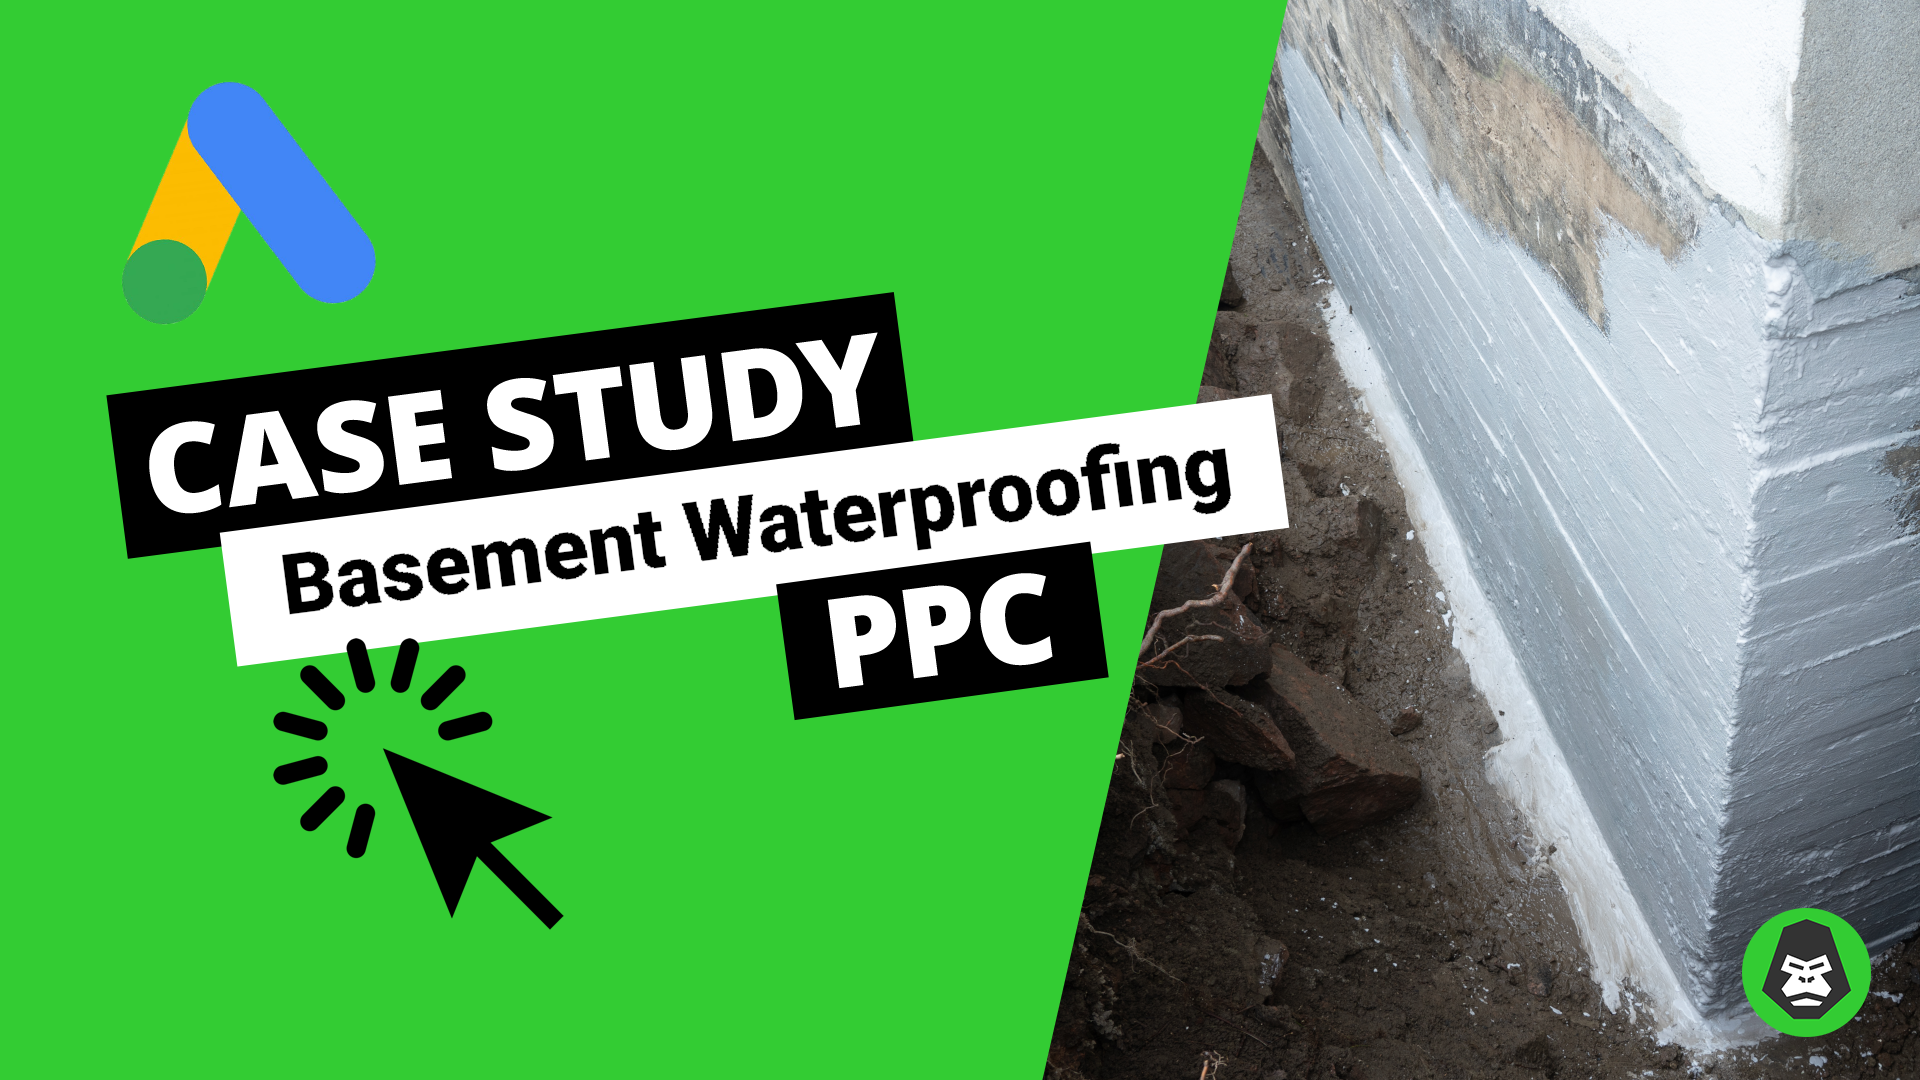 basement waterproofing lead generation google ads ppc